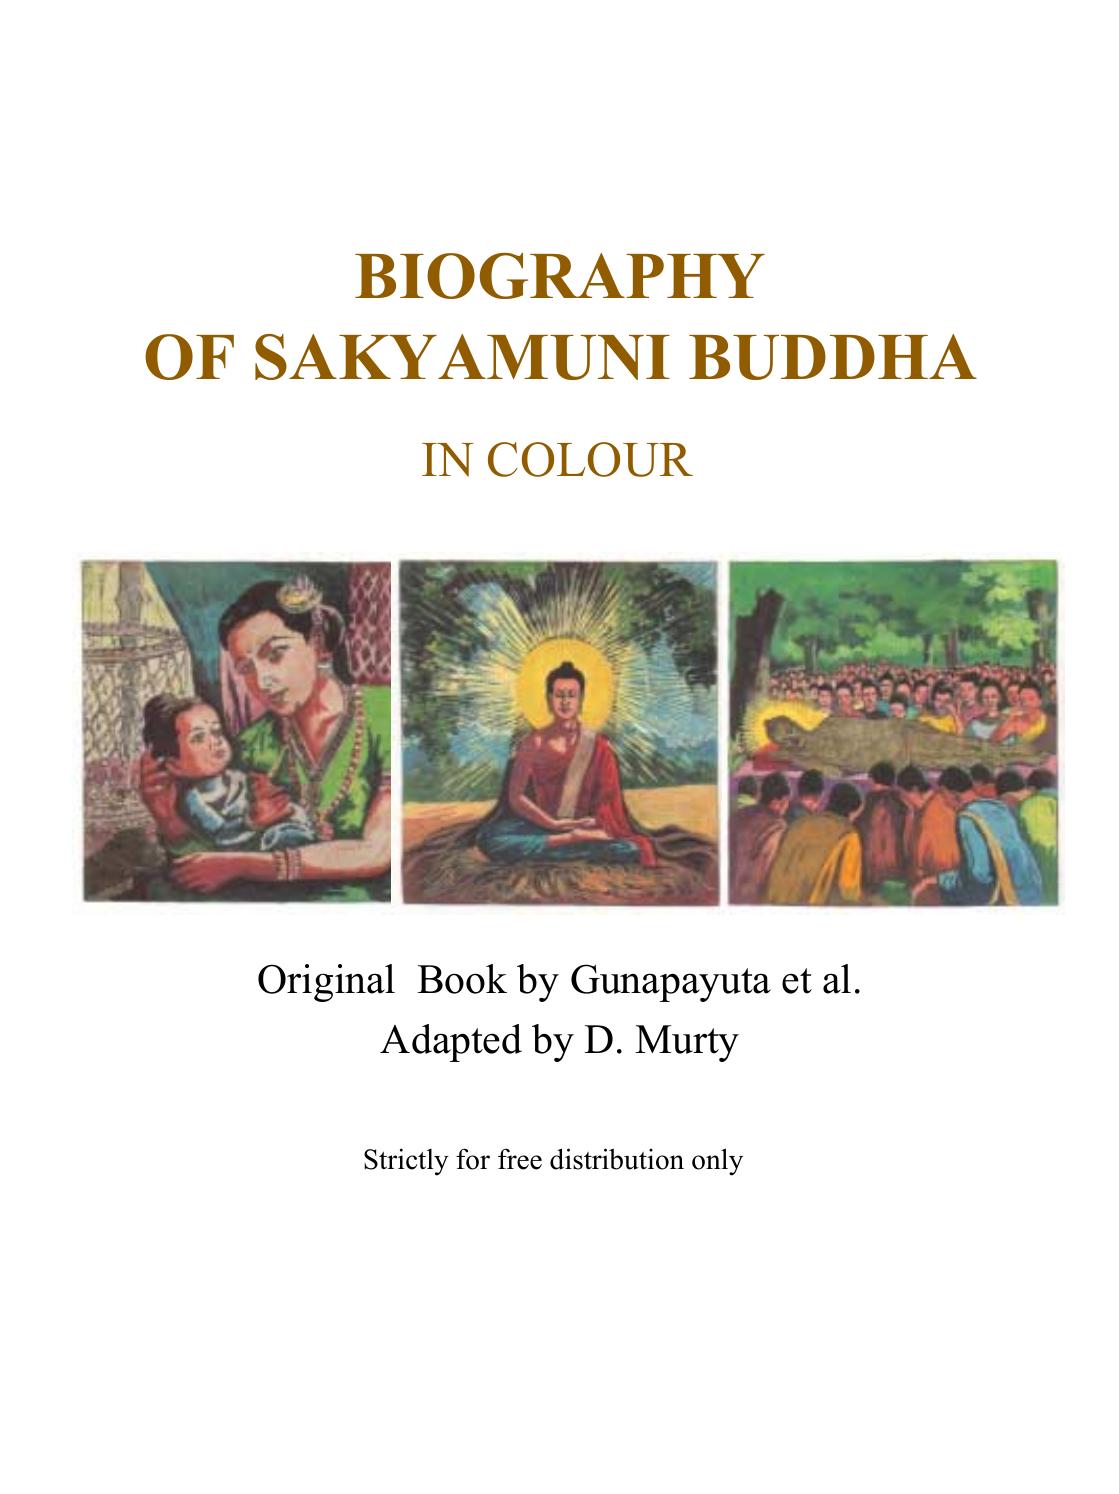 Biography of Sakyamuni Buddha